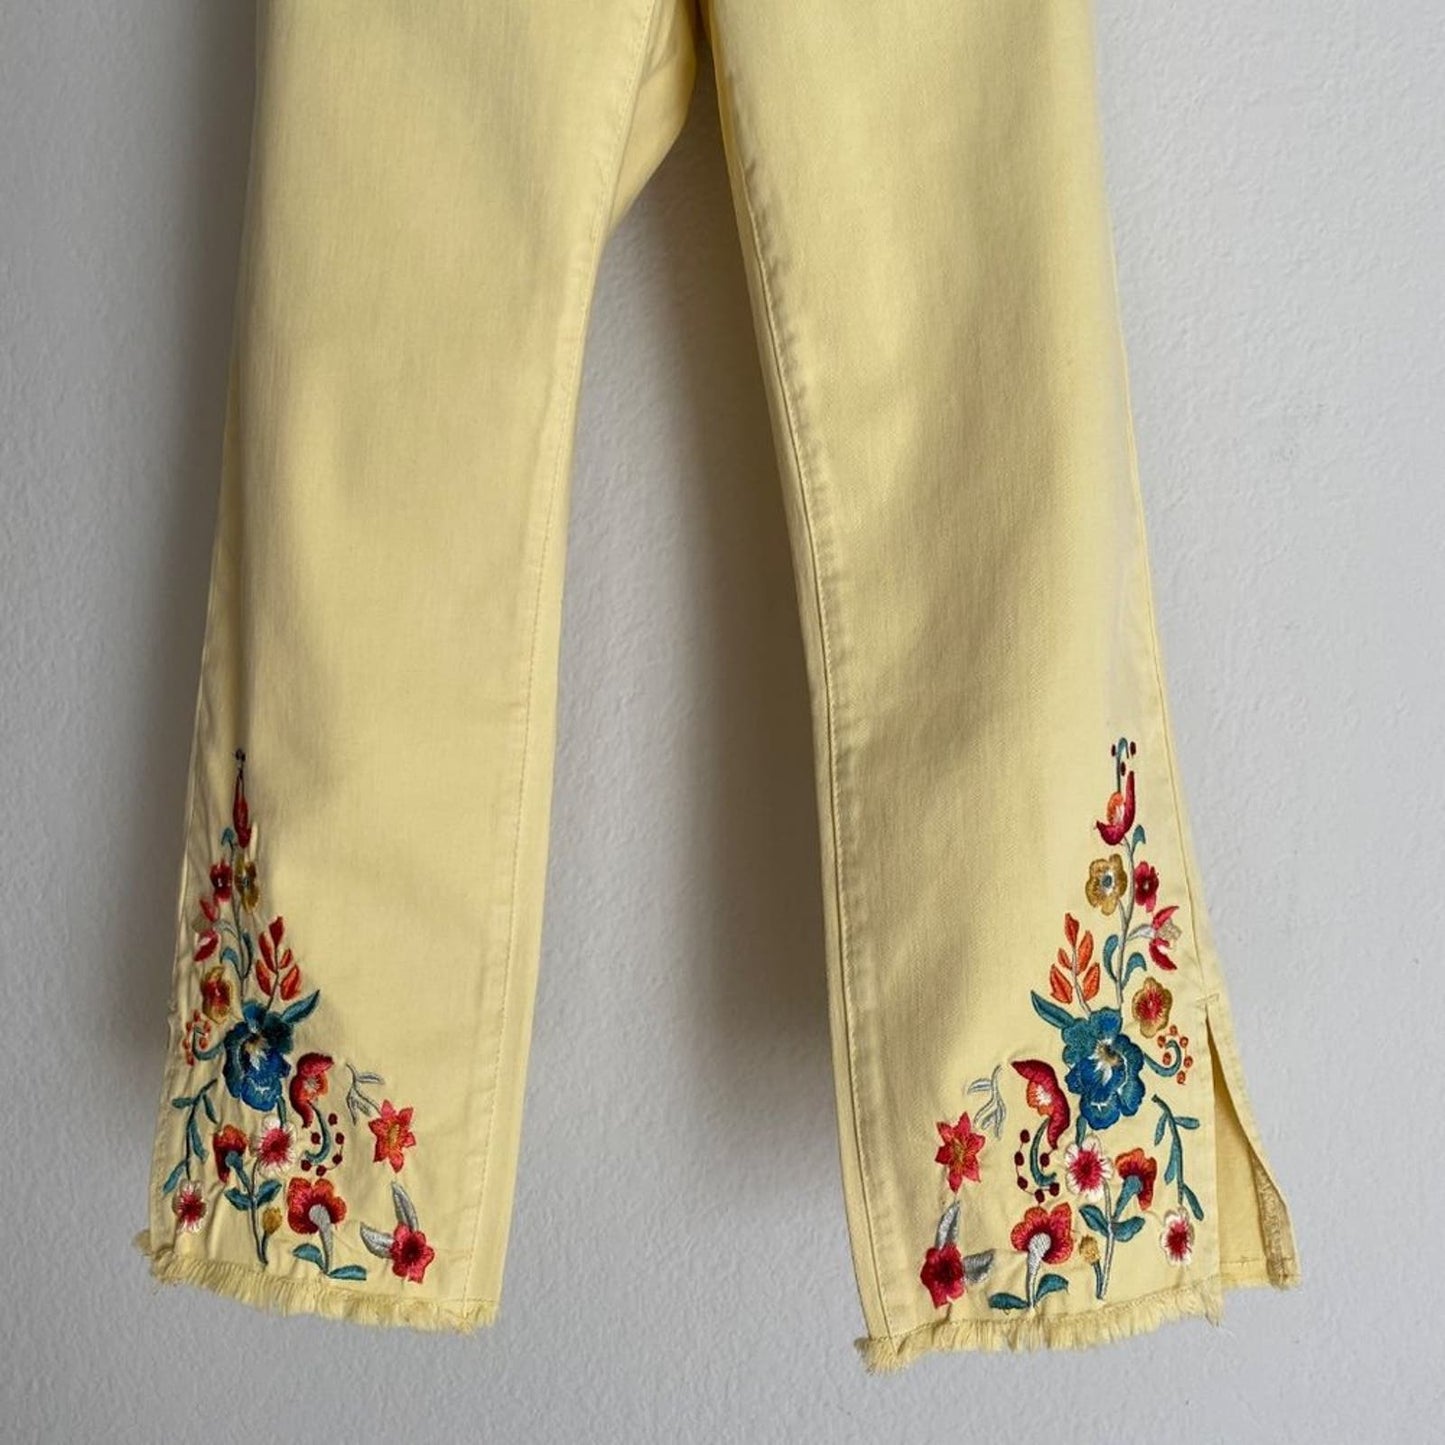 Tribal sz 4 audrey 70s mid rise straight capri floral jean pants